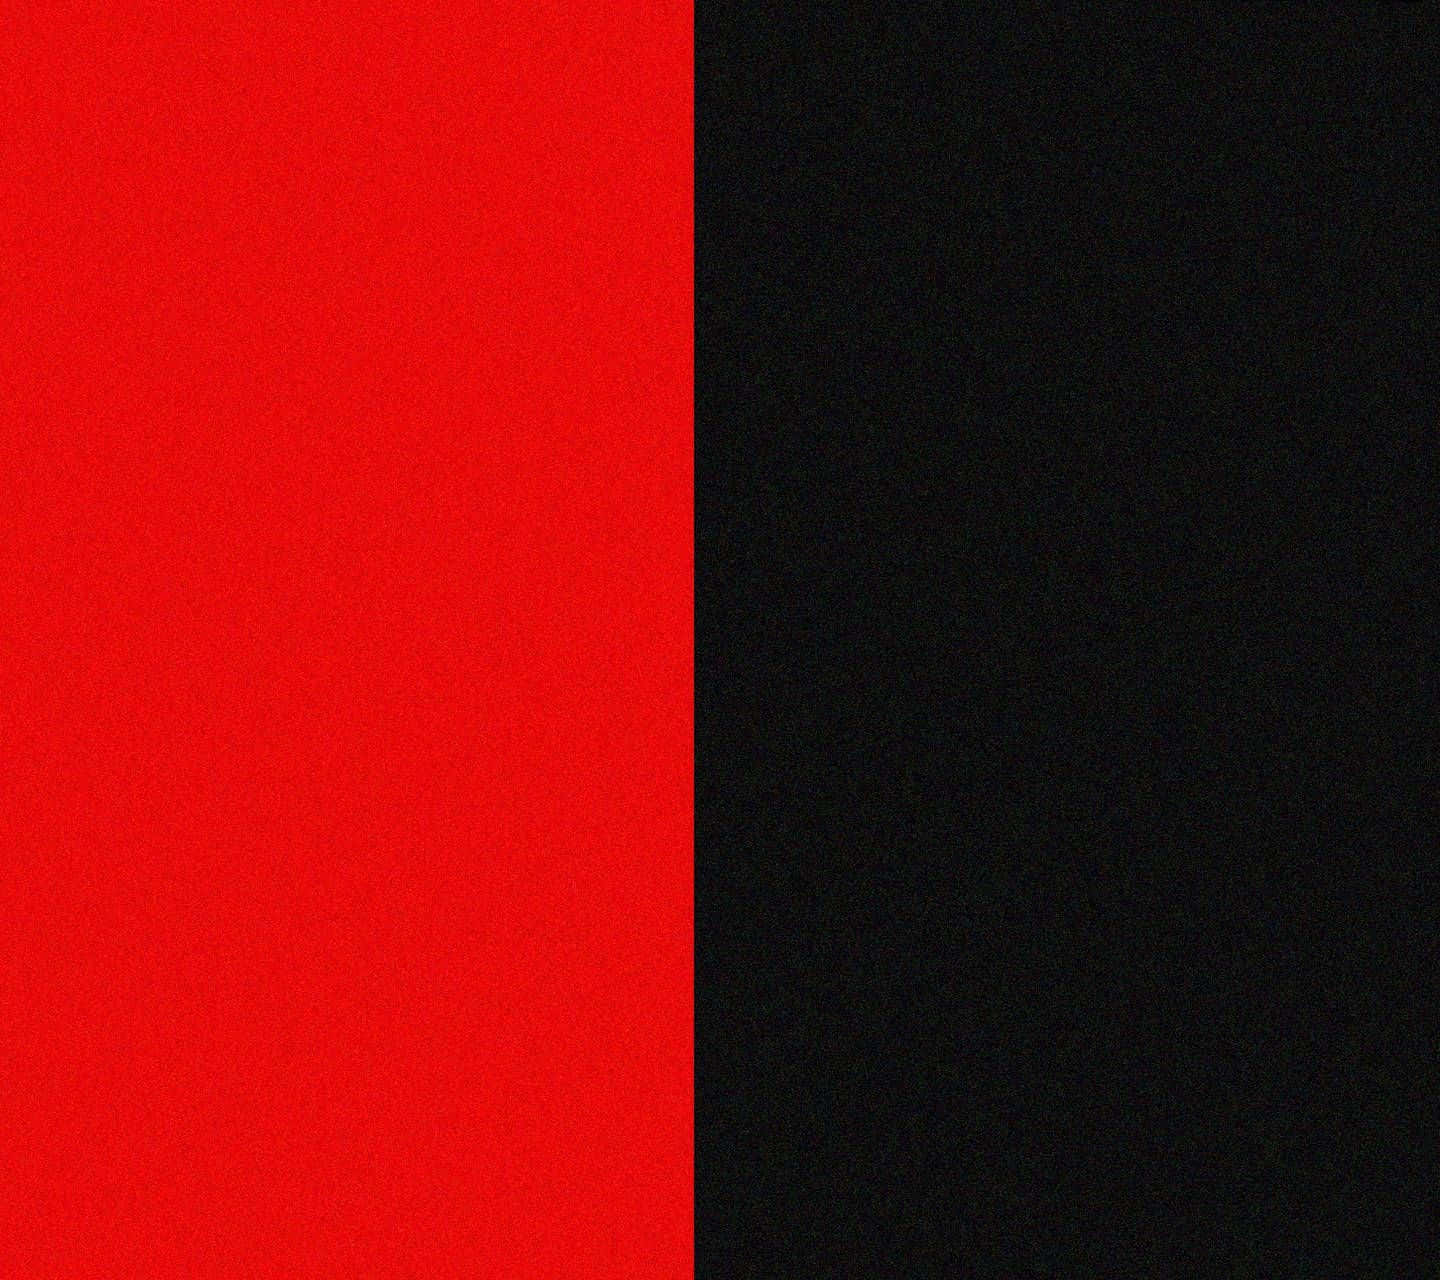 Einschwarzer Und Roter Hintergrund Mit Einem Schwarz-roten Gestreiften Muster. Wallpaper